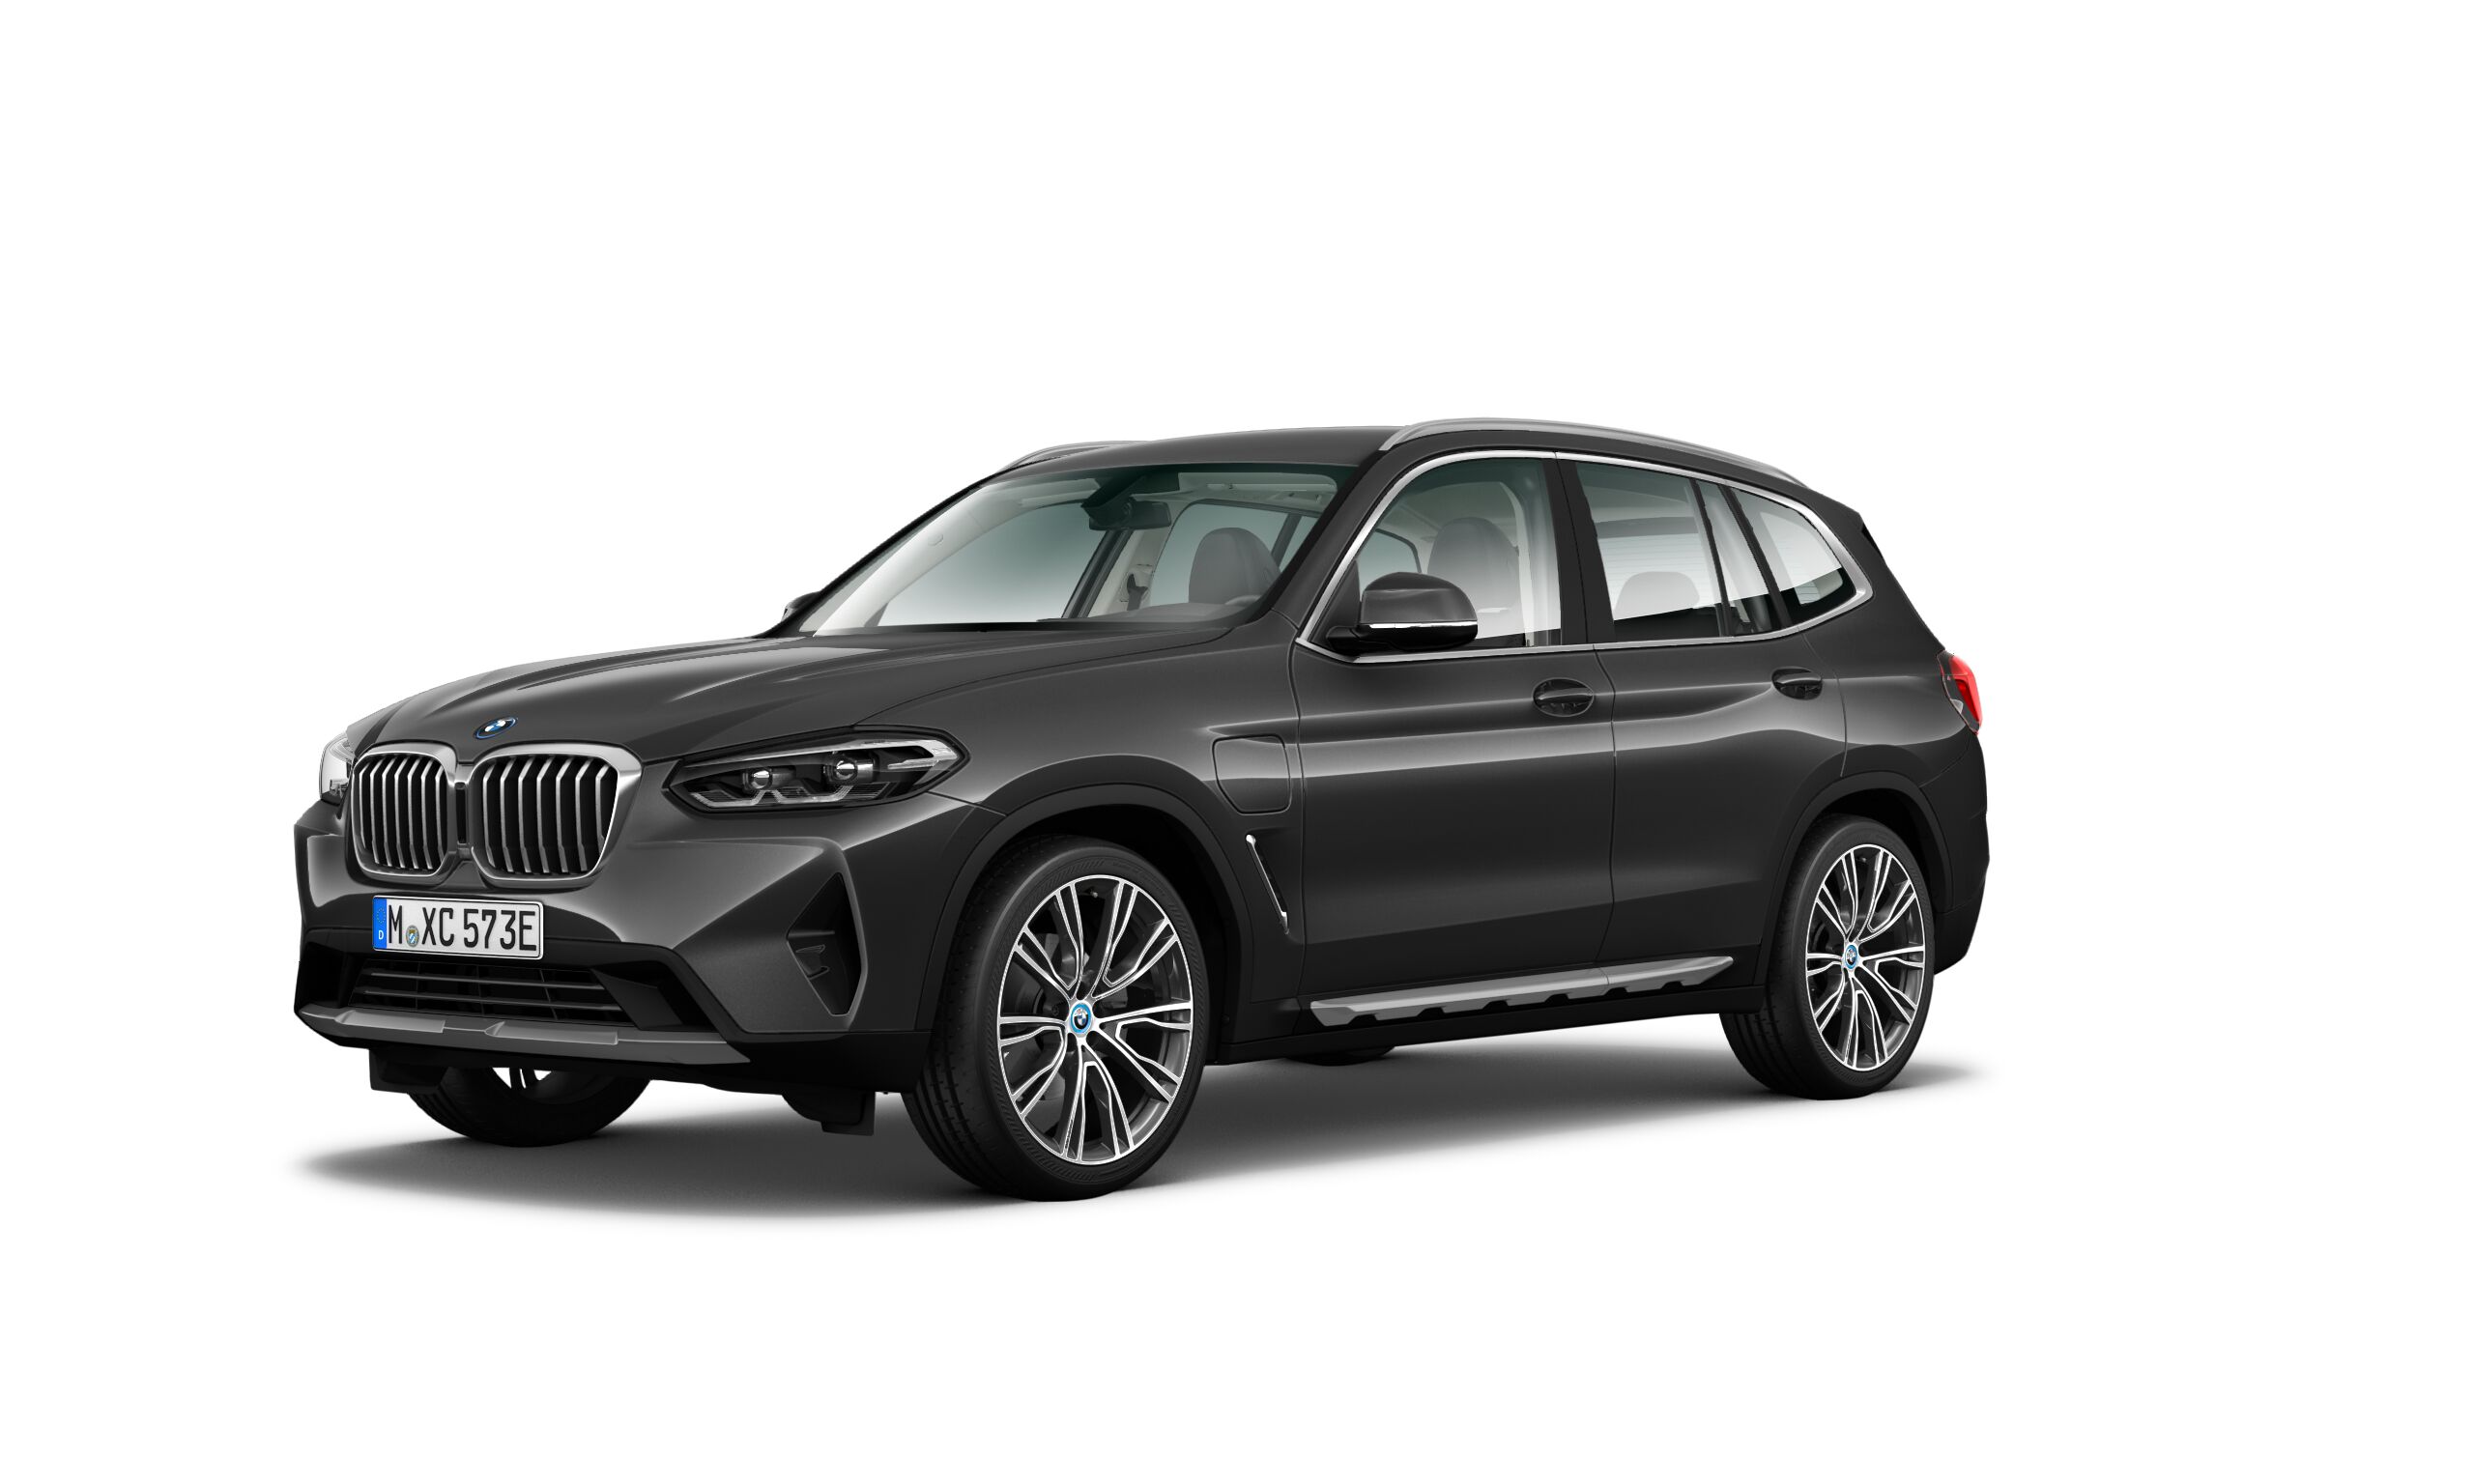 BMW - Gebrauchtwagen & Neuwagen kaufen & verkaufen